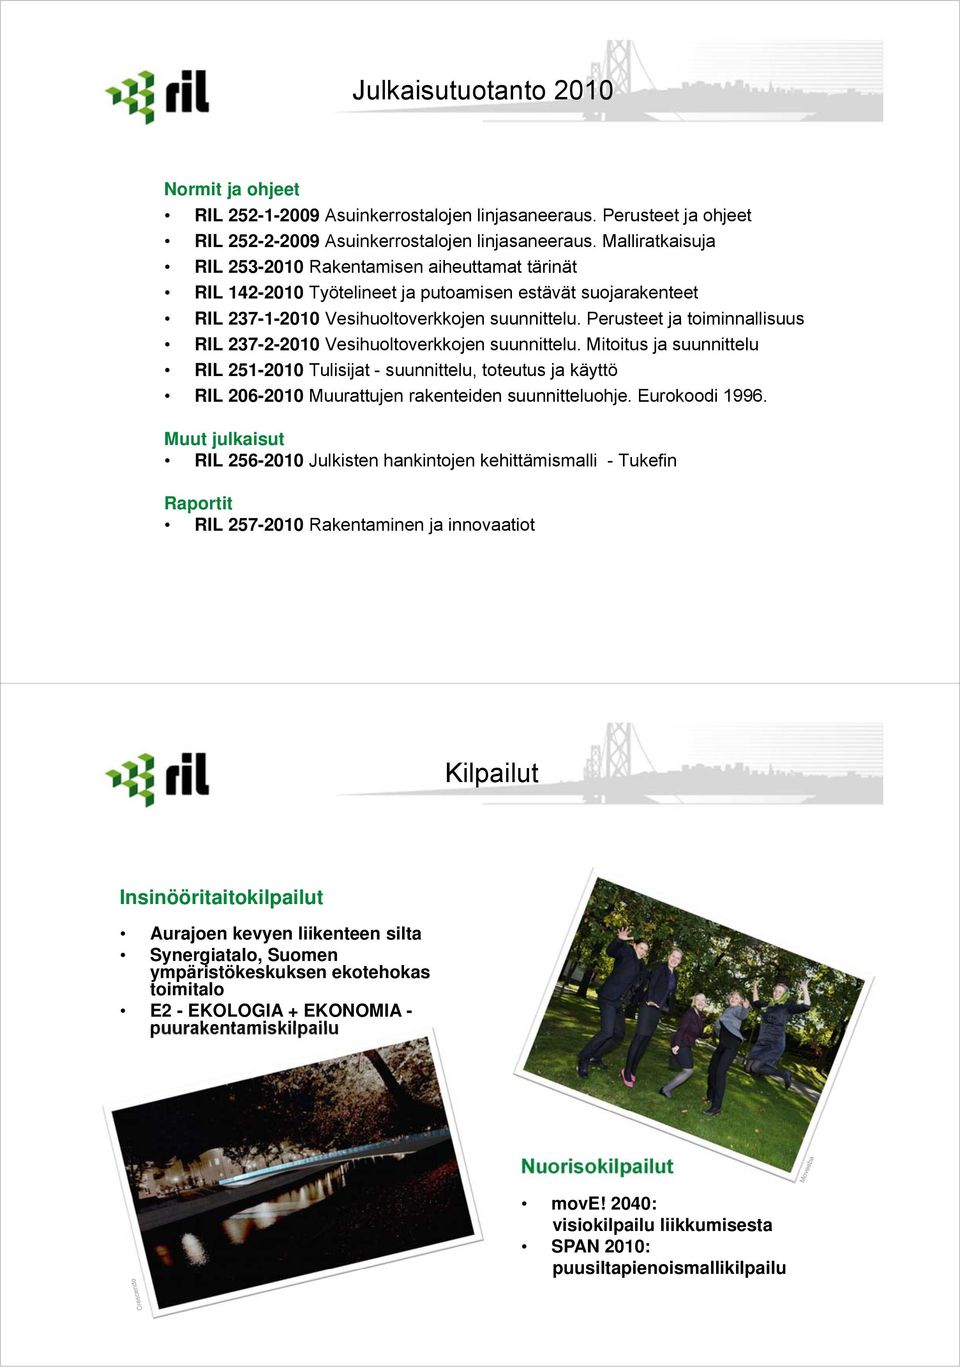 Perusteet ja toiminnallisuus RIL 237-2-2010 Vesihuoltoverkkojen suunnittelu.